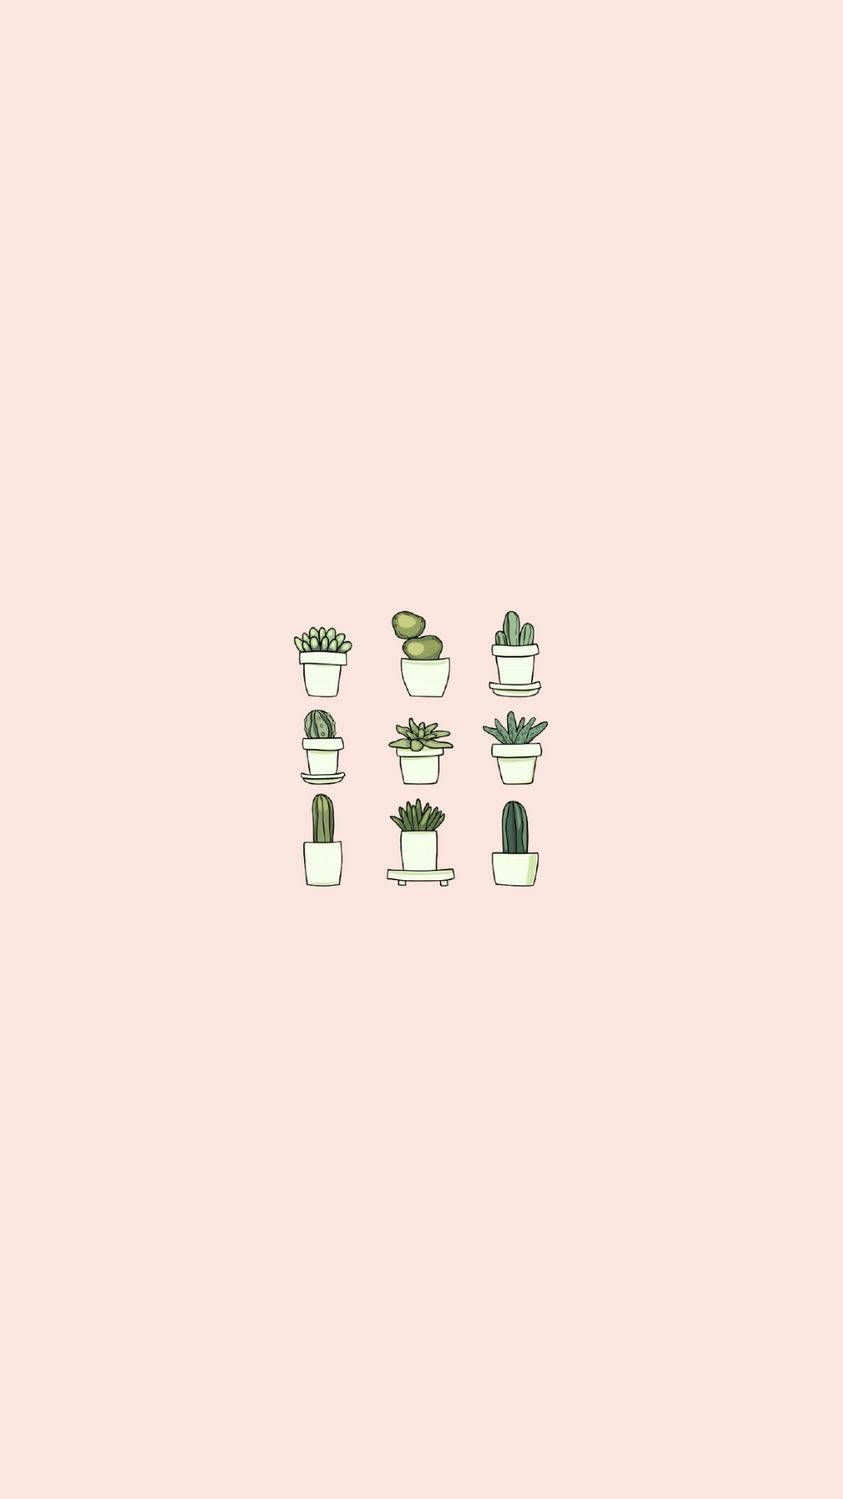 Download Cute Minimalist Succulents Wallpaper | Wallpapers.com